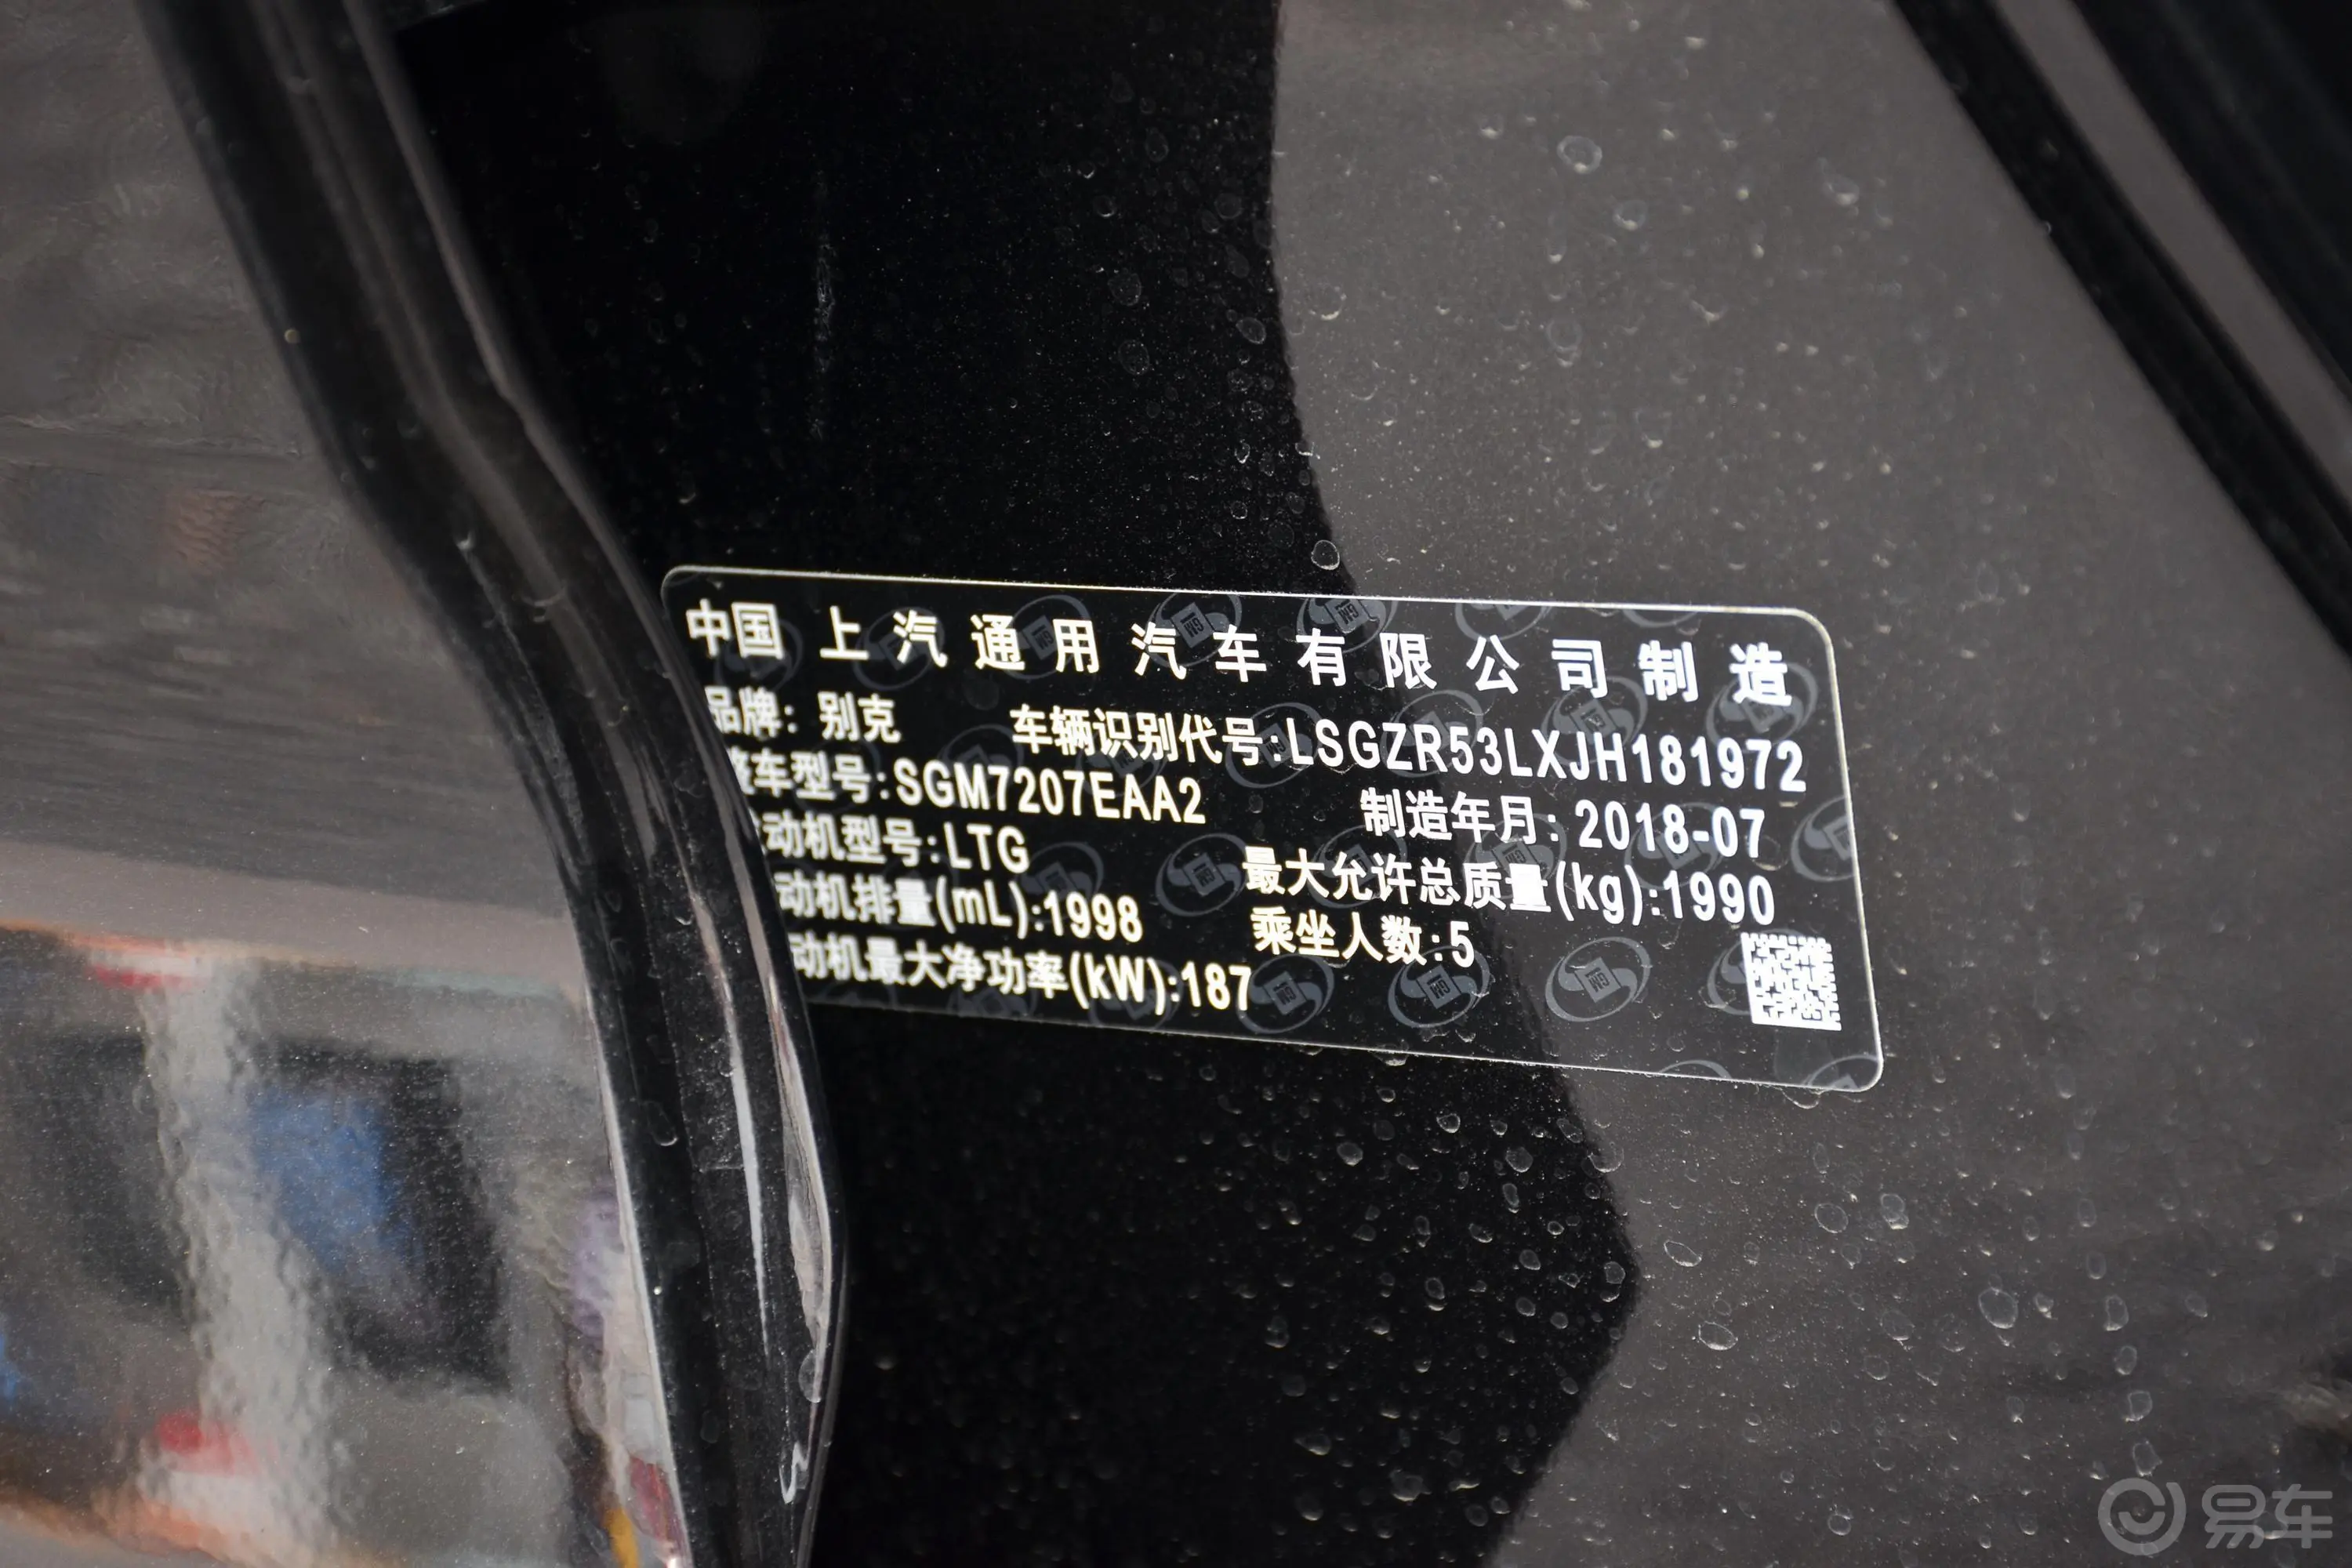 君威GS 28T 穿越火线联名限量版车辆信息铭牌